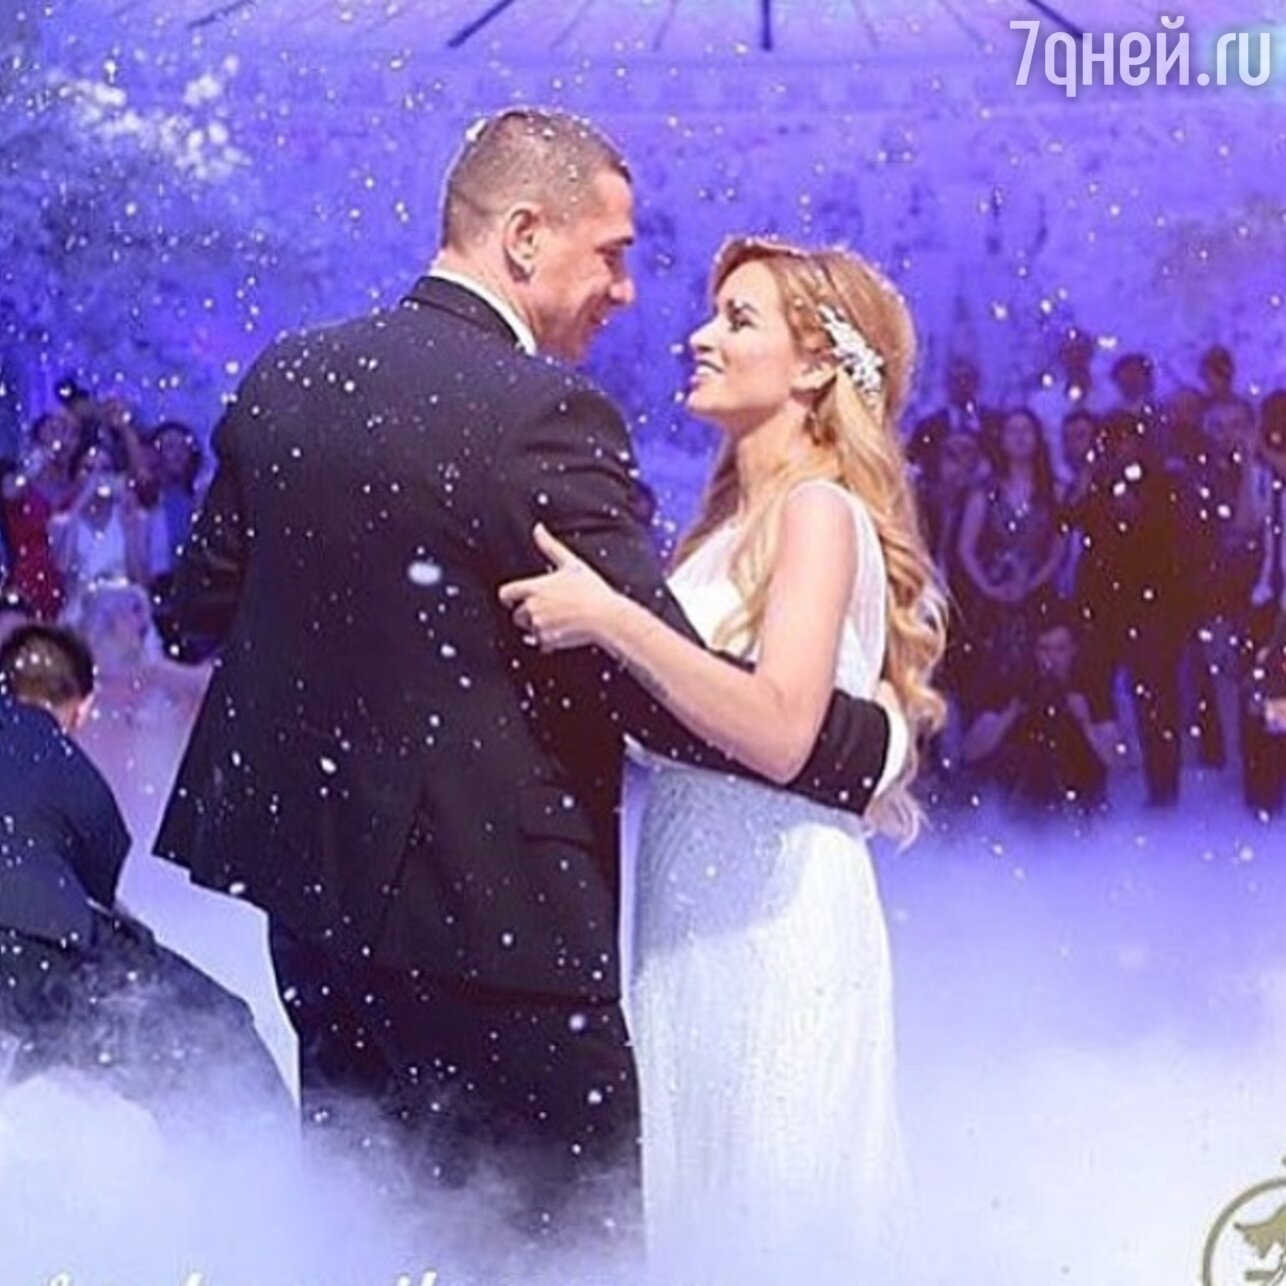 фото свадьбы ксении бородиной